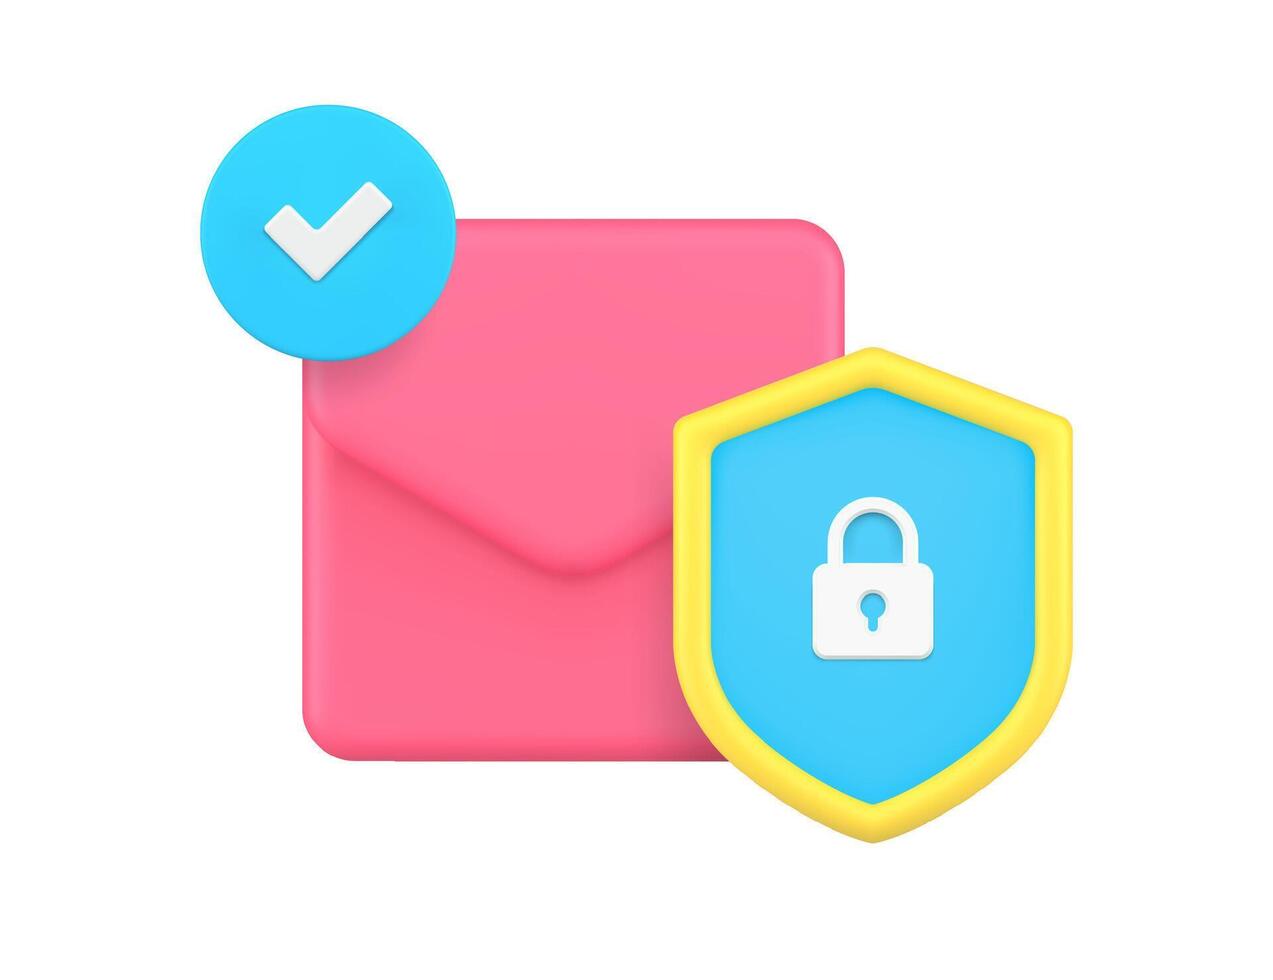 o email enviar Novo carta caixa de entrada bate-papo comunicação proteção dados segurança 3d ícone realista vetor